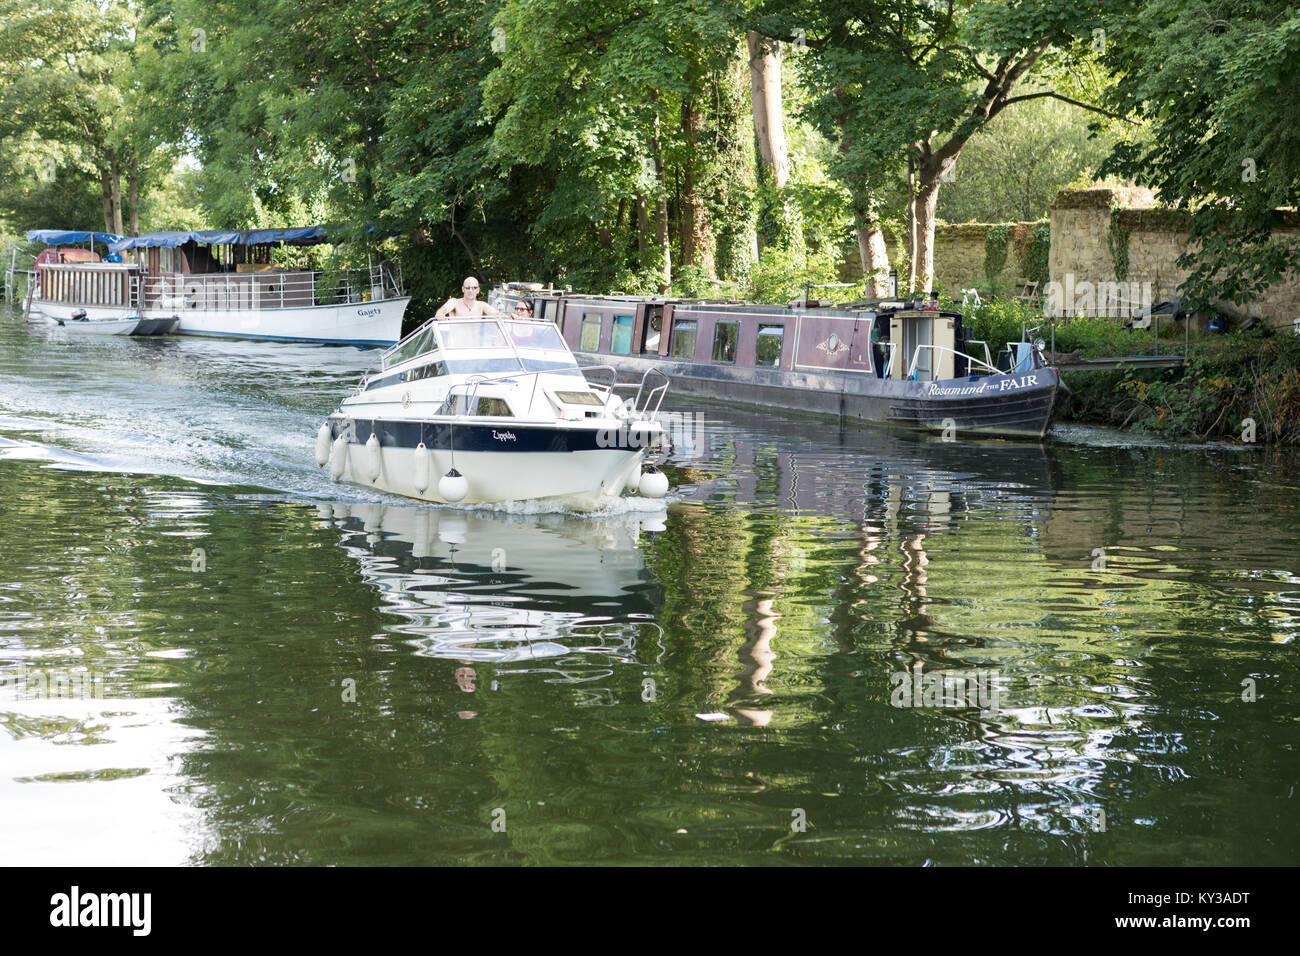 UK, Oxford, river cruiser sur le canal d'Oxford. Banque D'Images